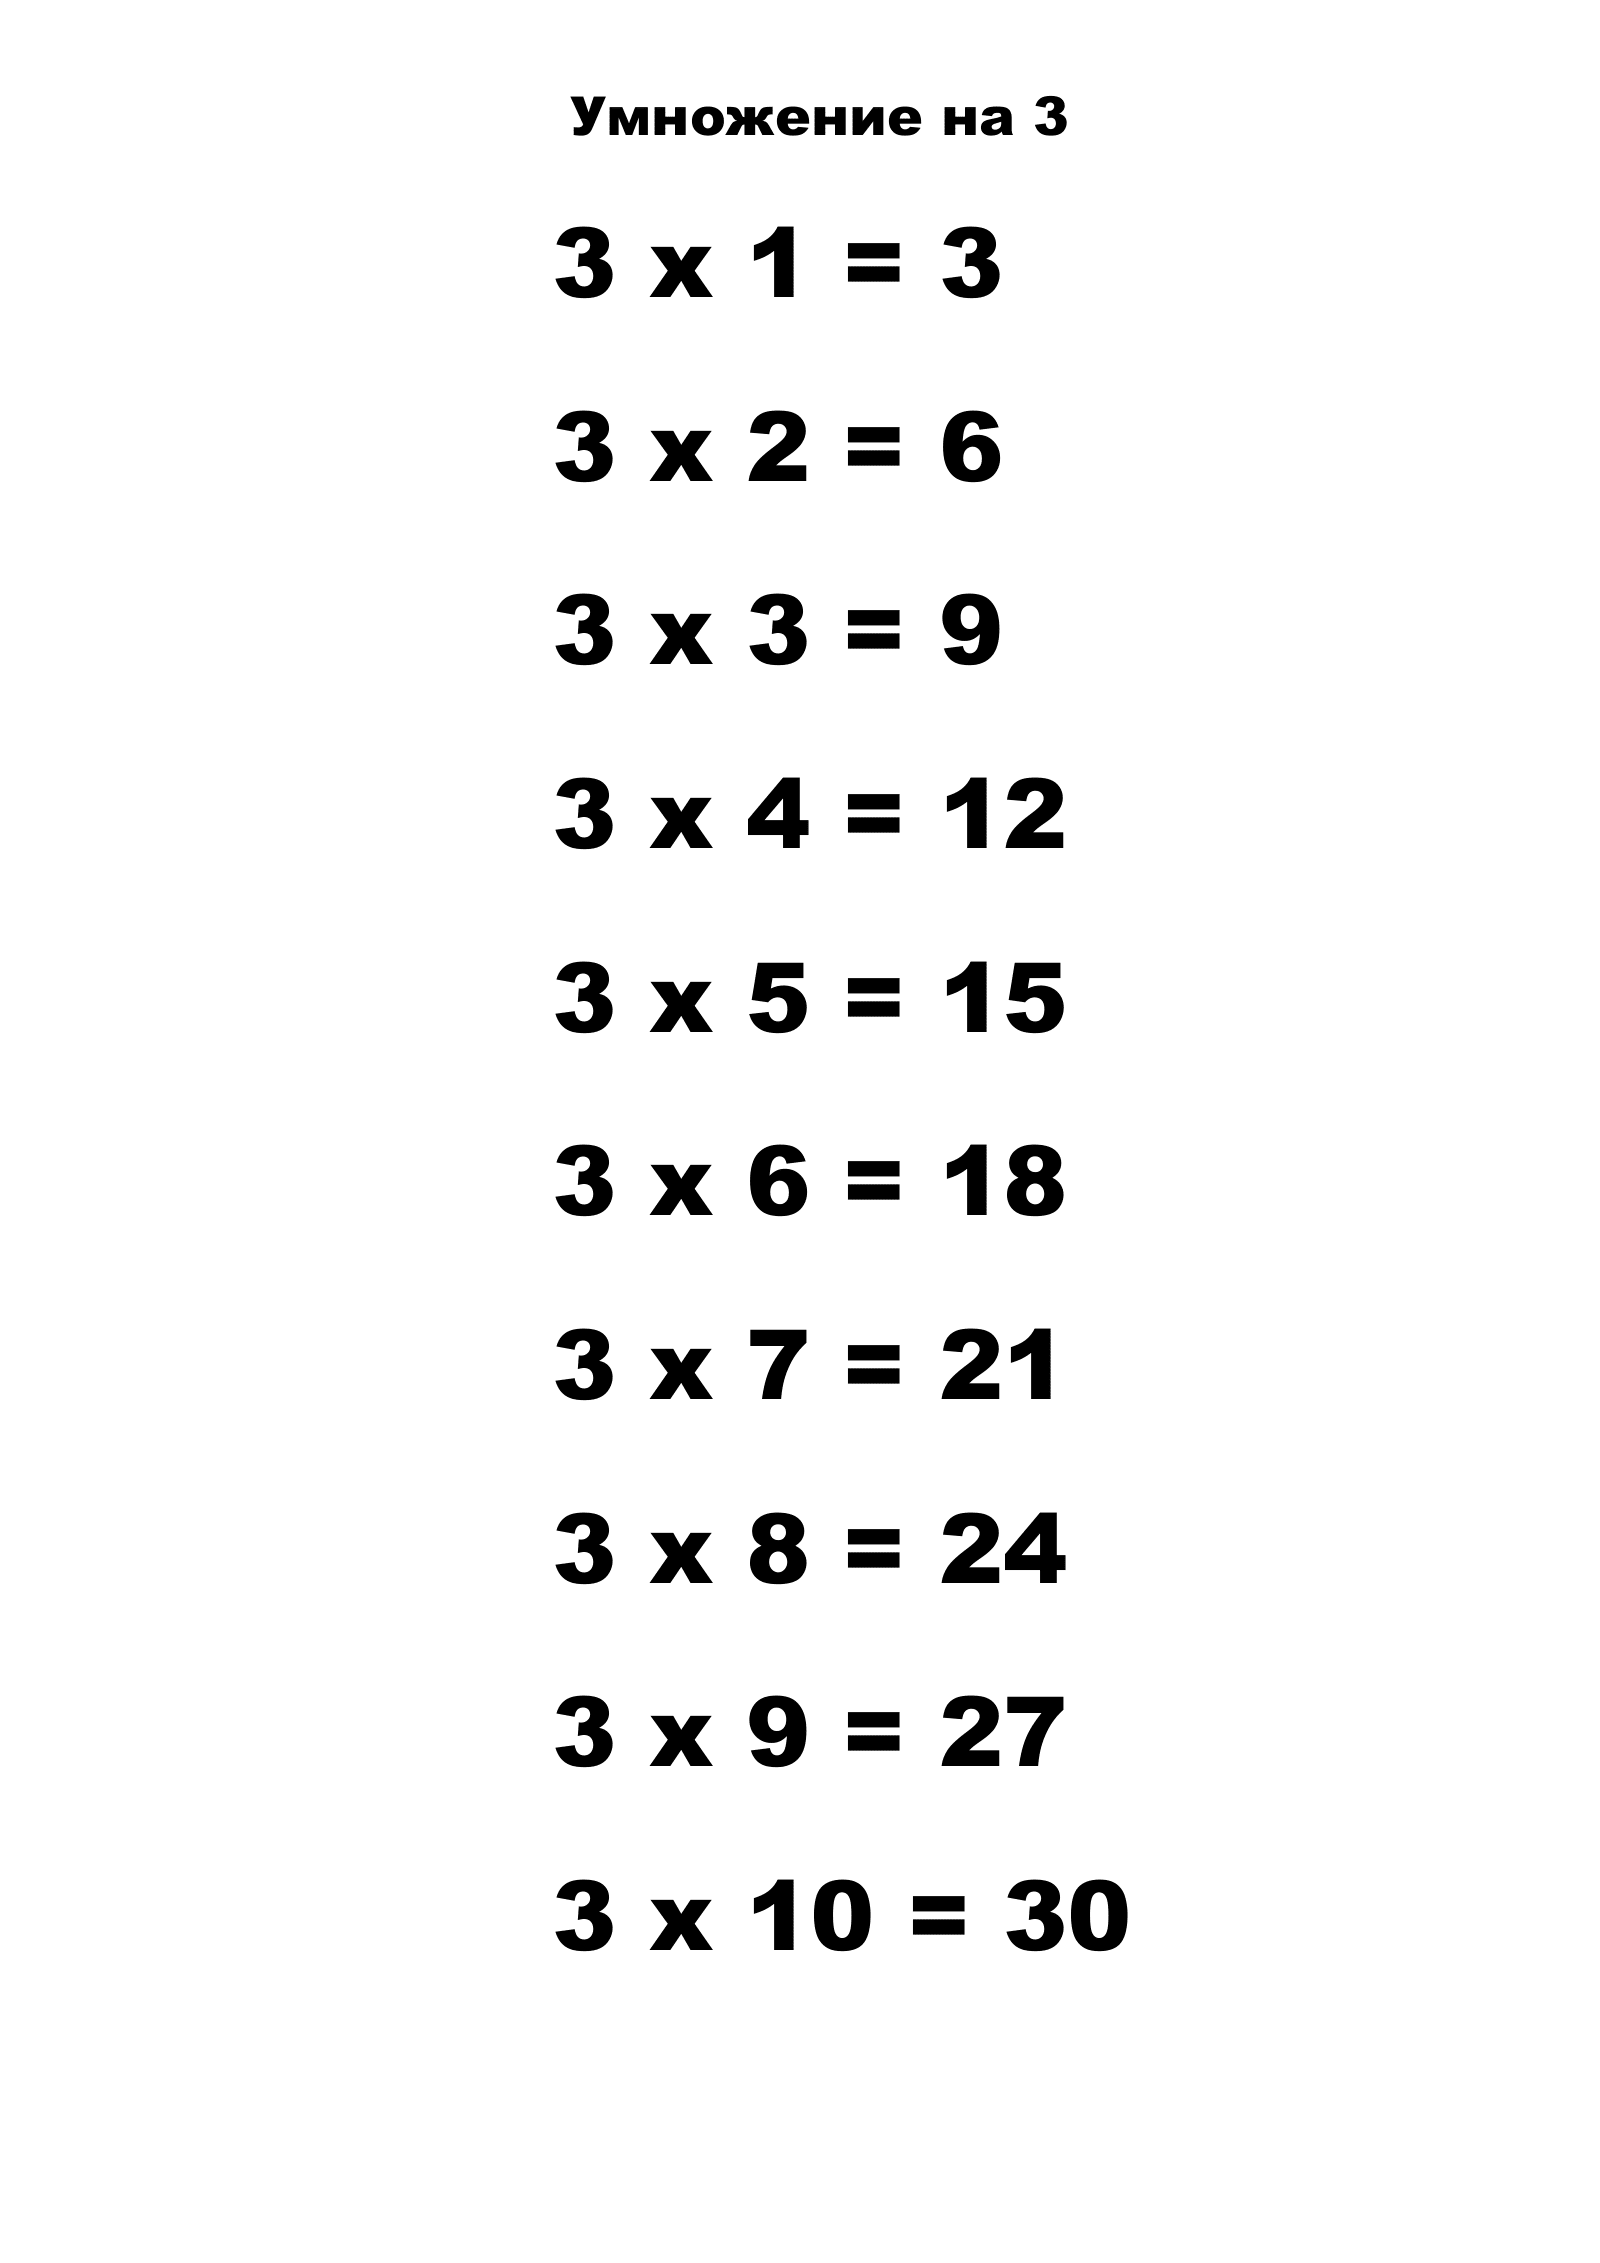 Таблица умножения на 3. Распечатать